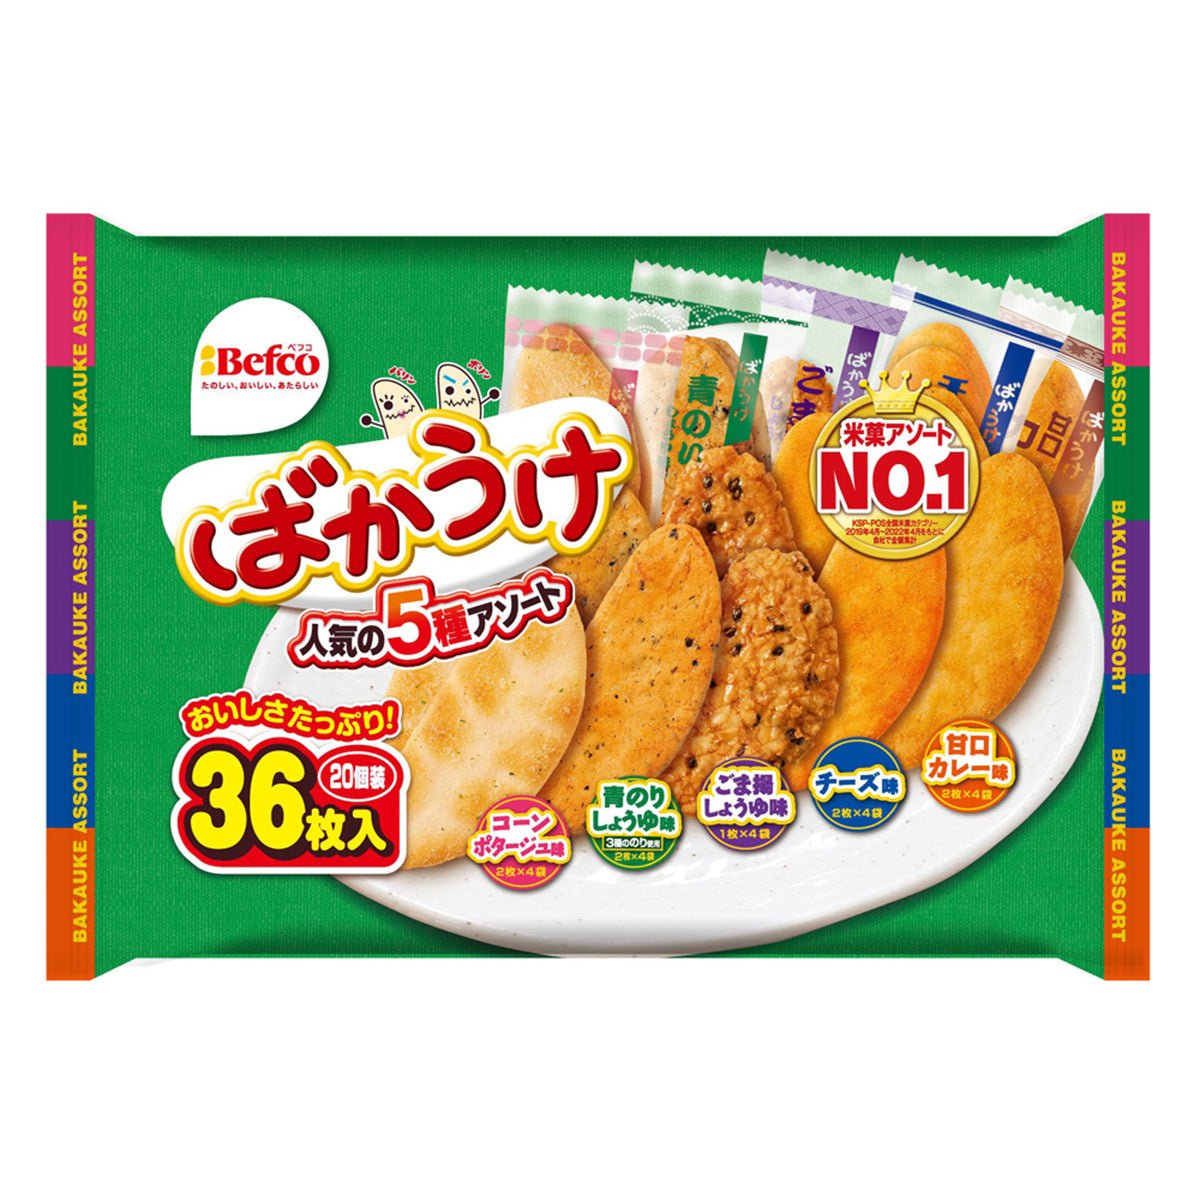 Befco BAKAUKE assort type - Tokyo Fresh Direct